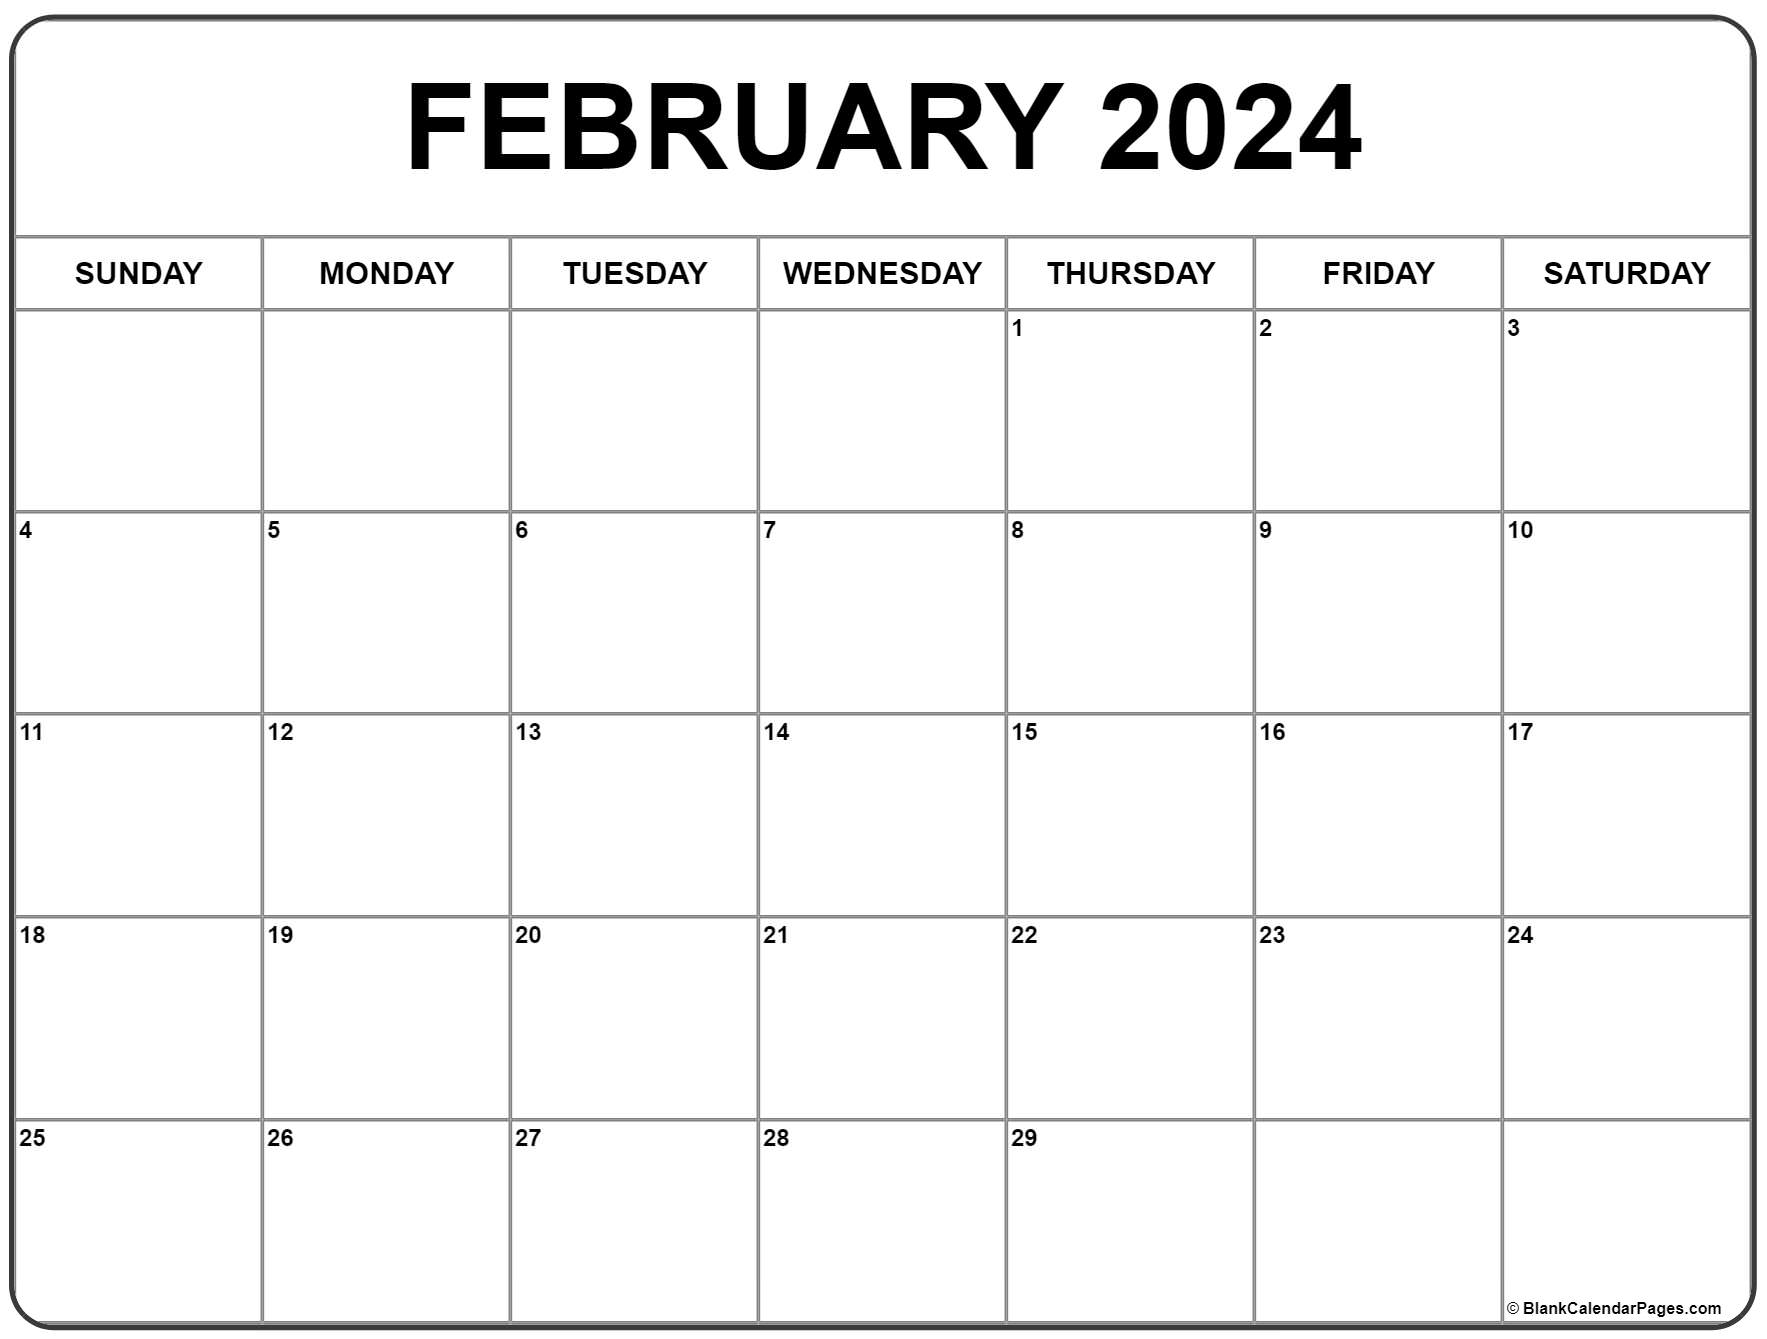 February 2024 Calendar | Free Printable Calendar for 2024 Feb Calendar Printable